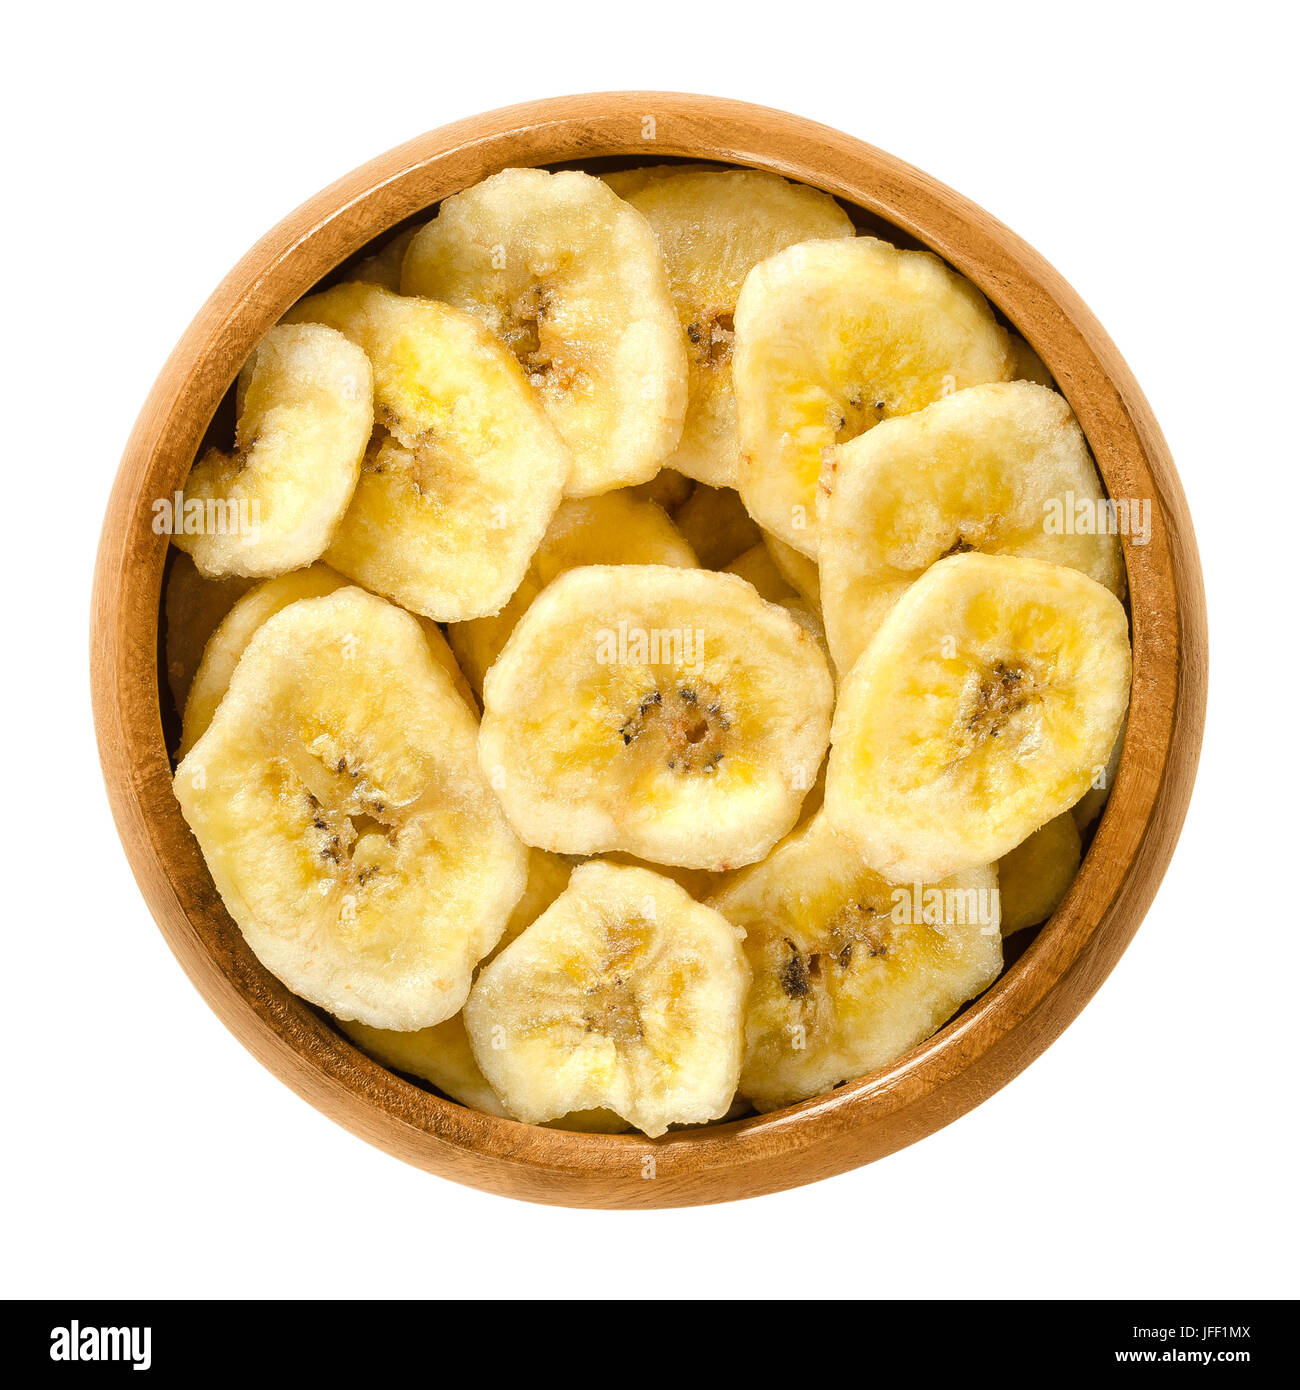 Chips de banane séchée dans bol en bois. Frits jaunes tranches de bananes, recouvert de Sucre ou miel. Snack avec goût sucré. Macro photo alimentaire isolé Banque D'Images